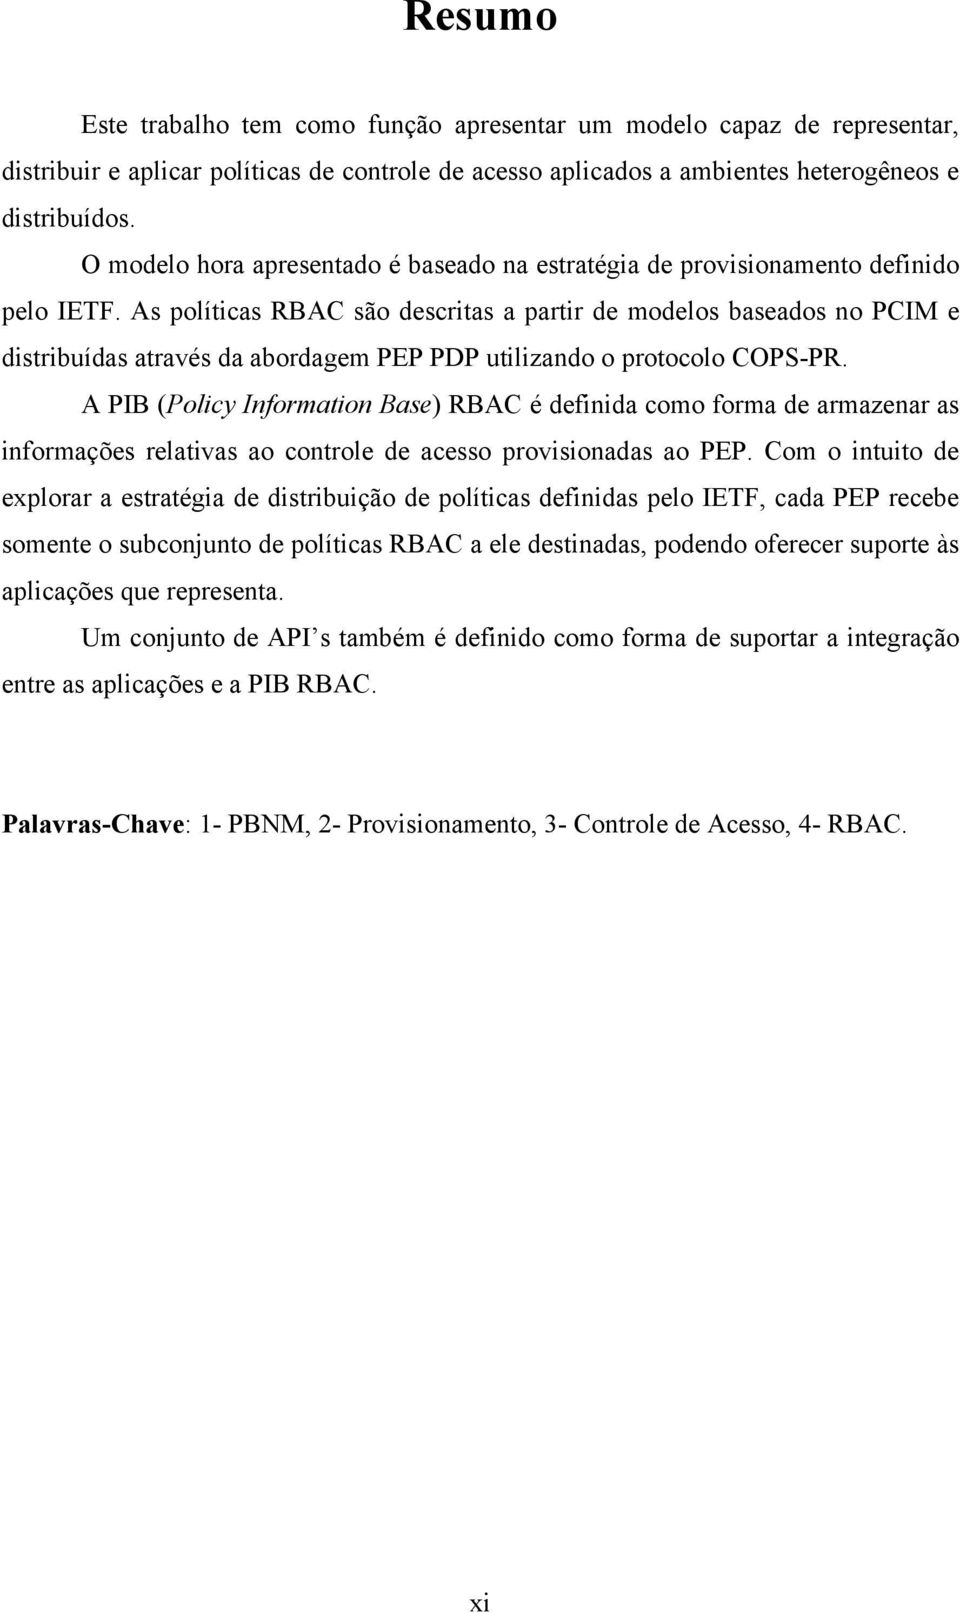 As políticas RBAC são descritas a partir de modelos baseados no PCIM e distribuídas através da abordagem PEP PDP utilizando o protocolo COPS-PR.